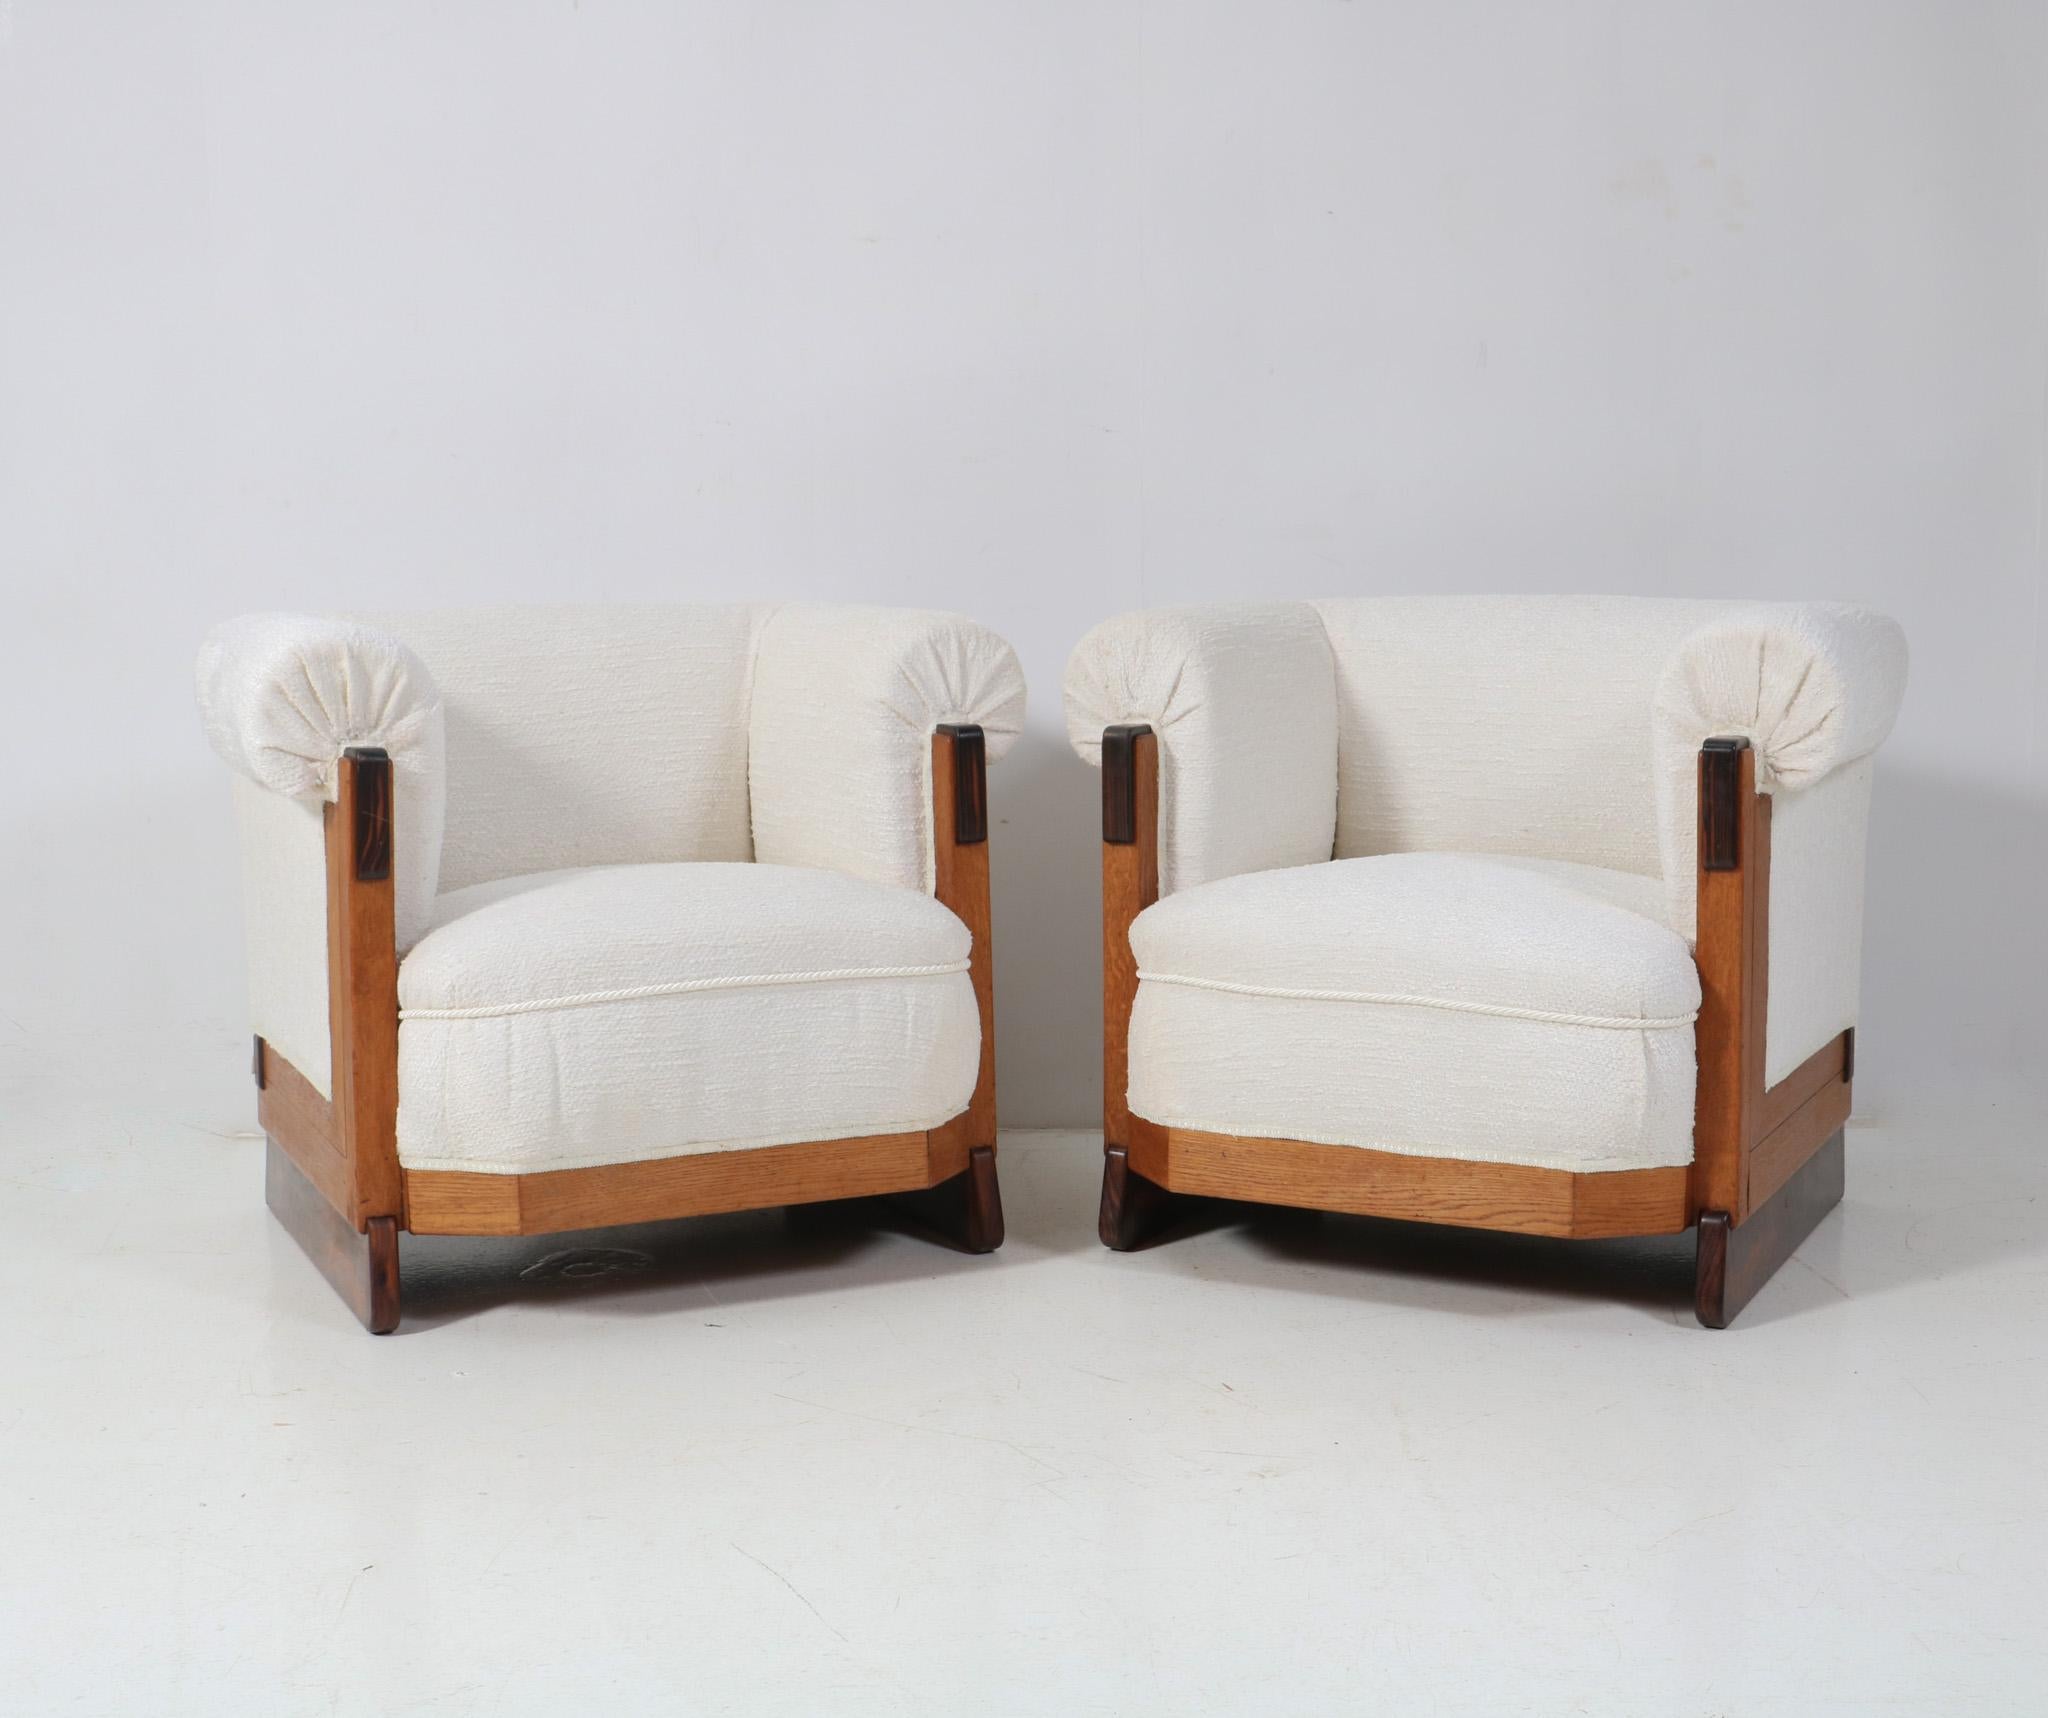 Wunderschönes und sehr seltenes Paar Art Deco Modernist Lounge Chairs.
Entwurf von Anton Lucas für N.V. Meubelkunst Leiden.
Auffälliges niederländisches Design aus den 1920er Jahren.
Massive Eichenrahmen mit originalen massiven